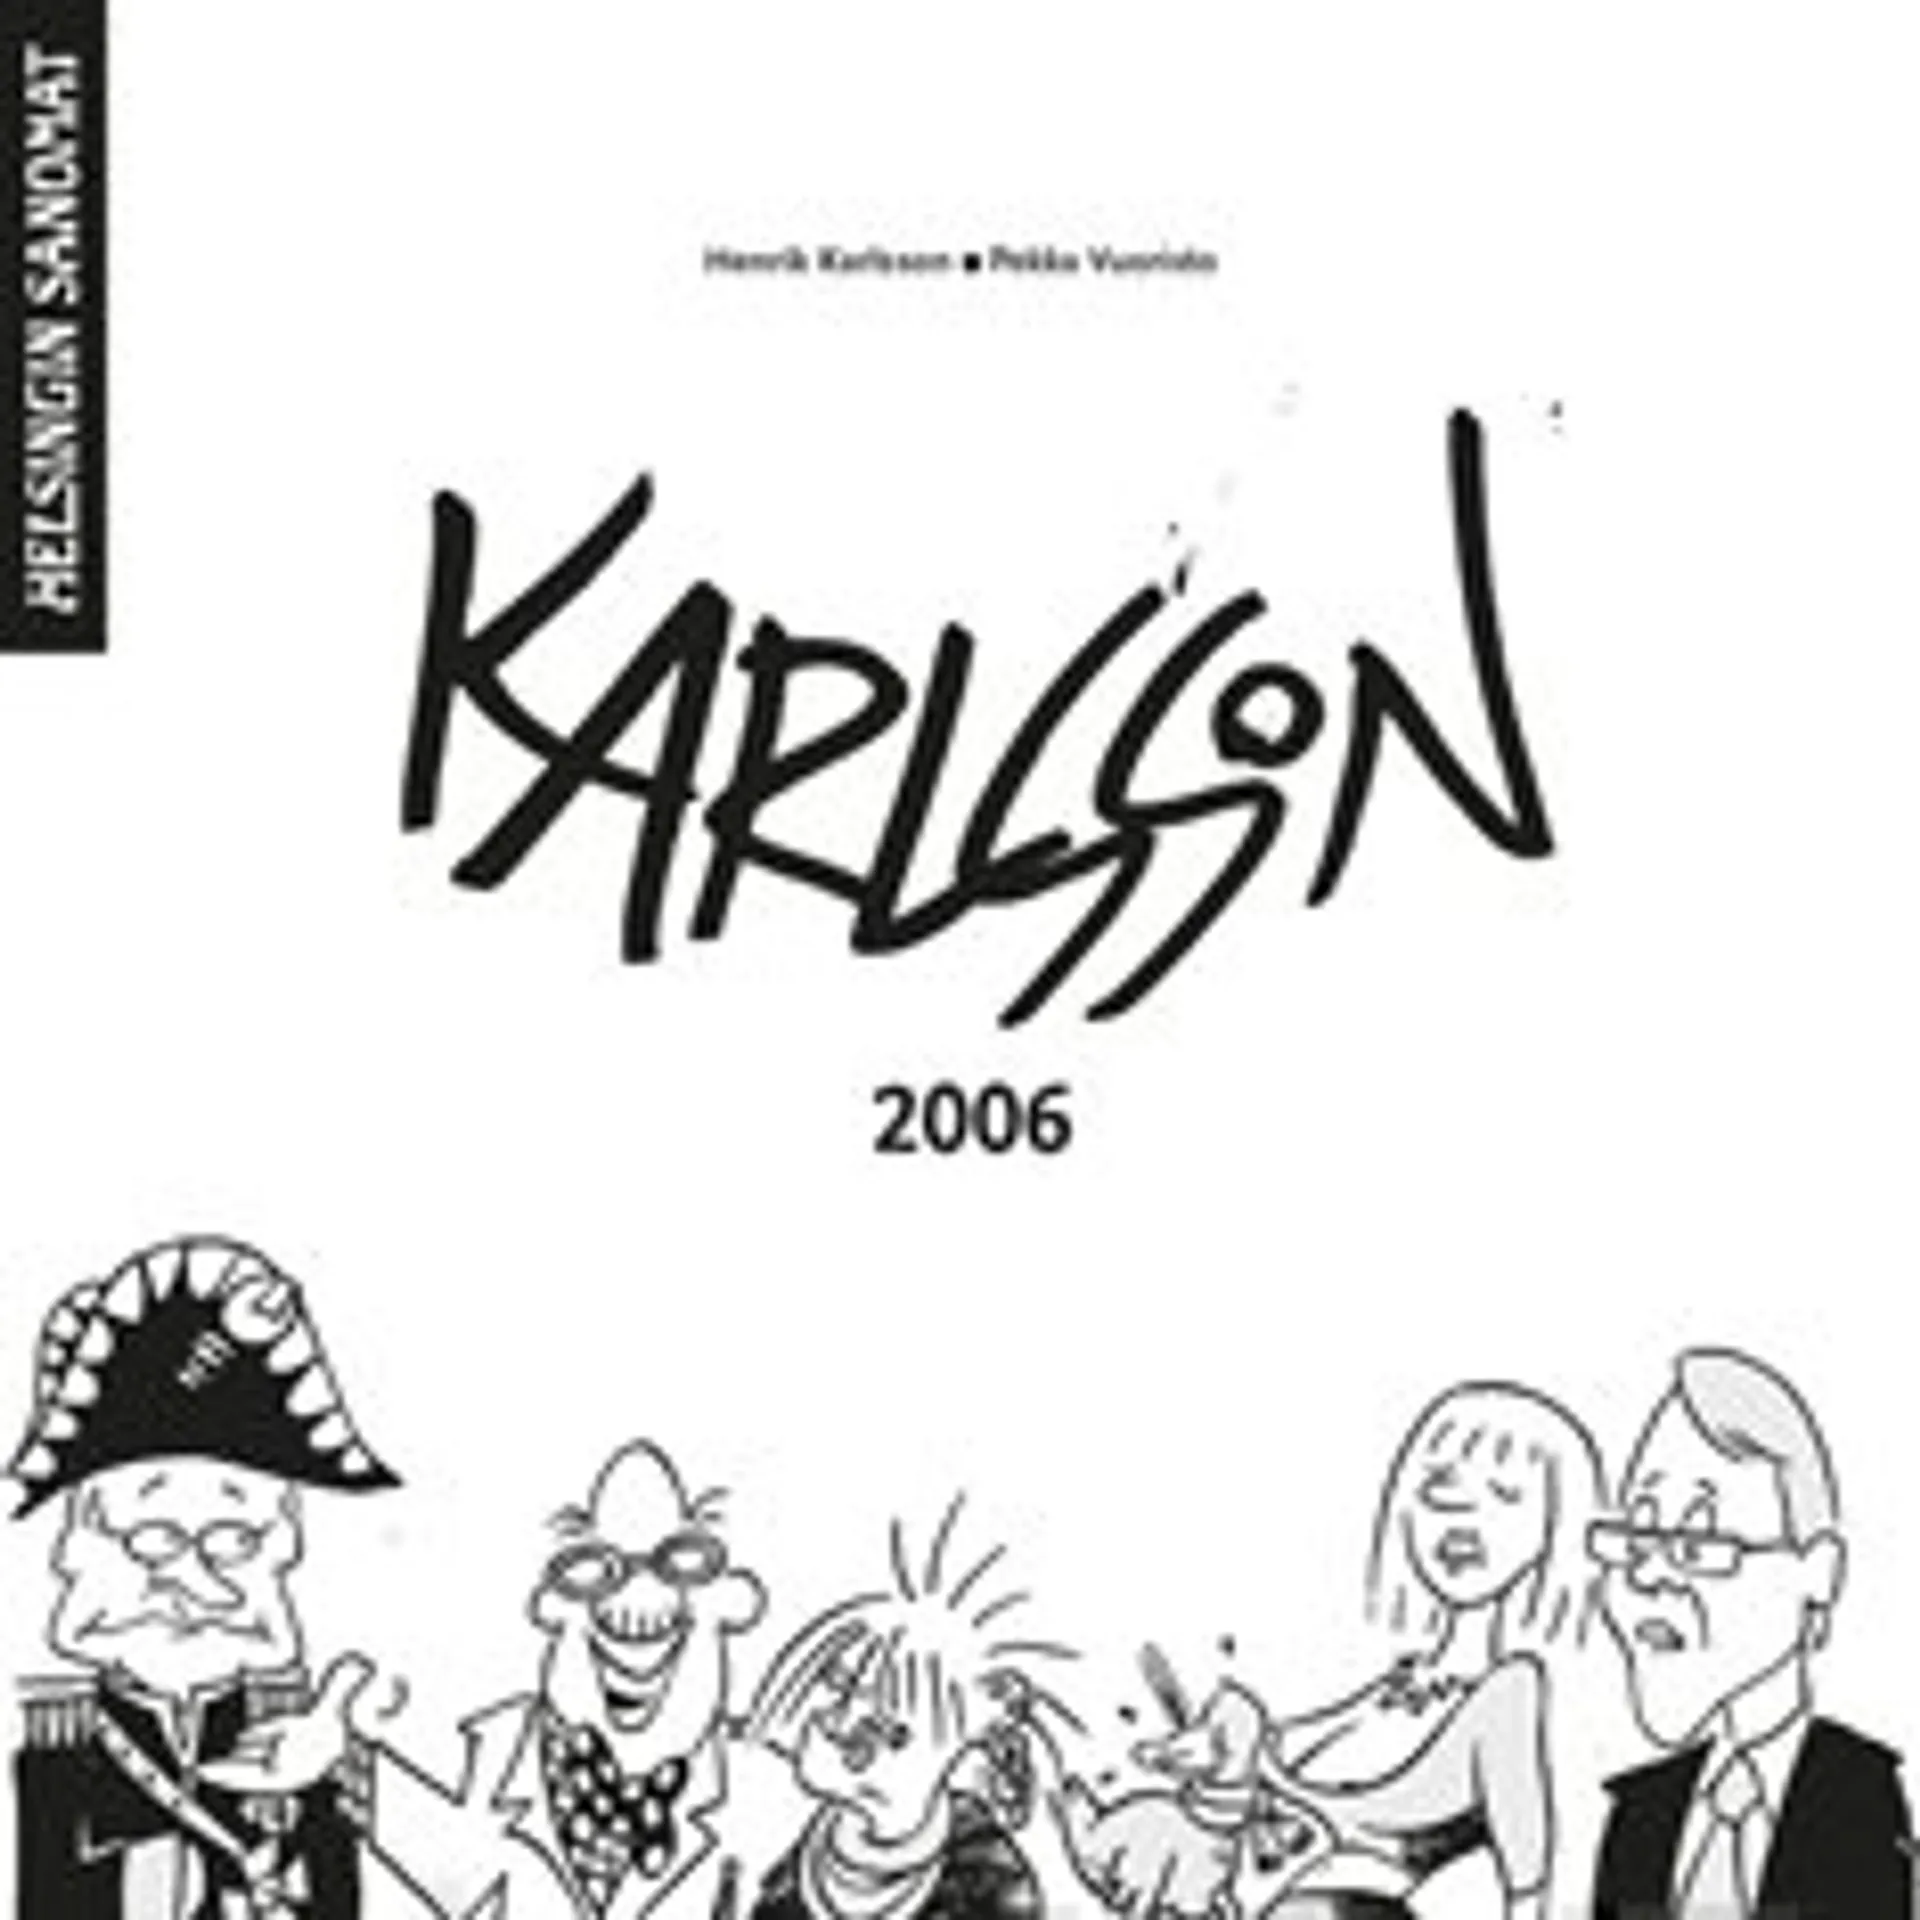 Karlssonin vuosi 2006